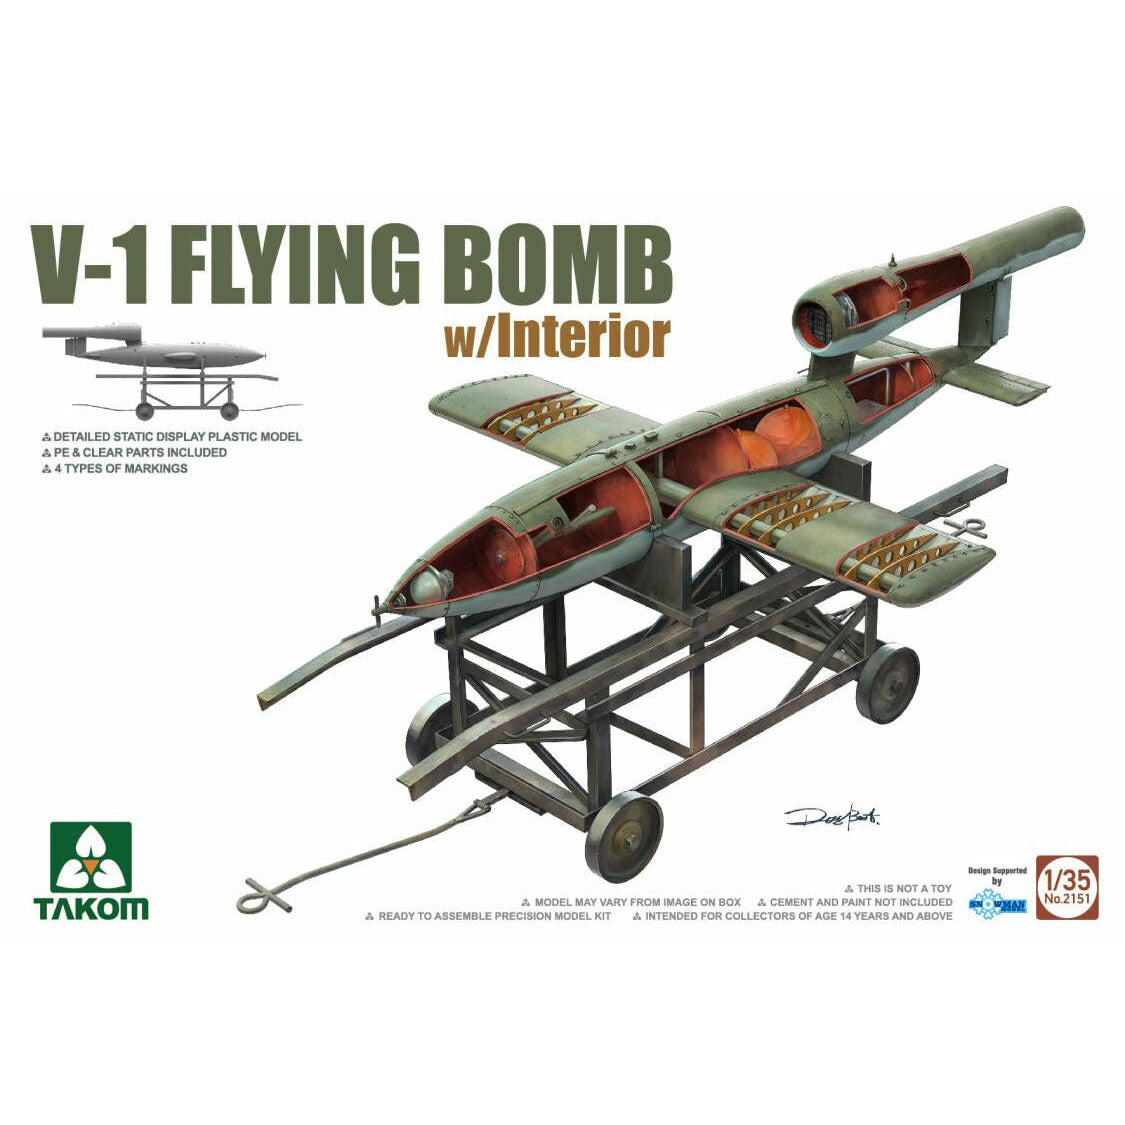 V-1 Flying Bomb w/Interior 1/35 #2151 by Takom